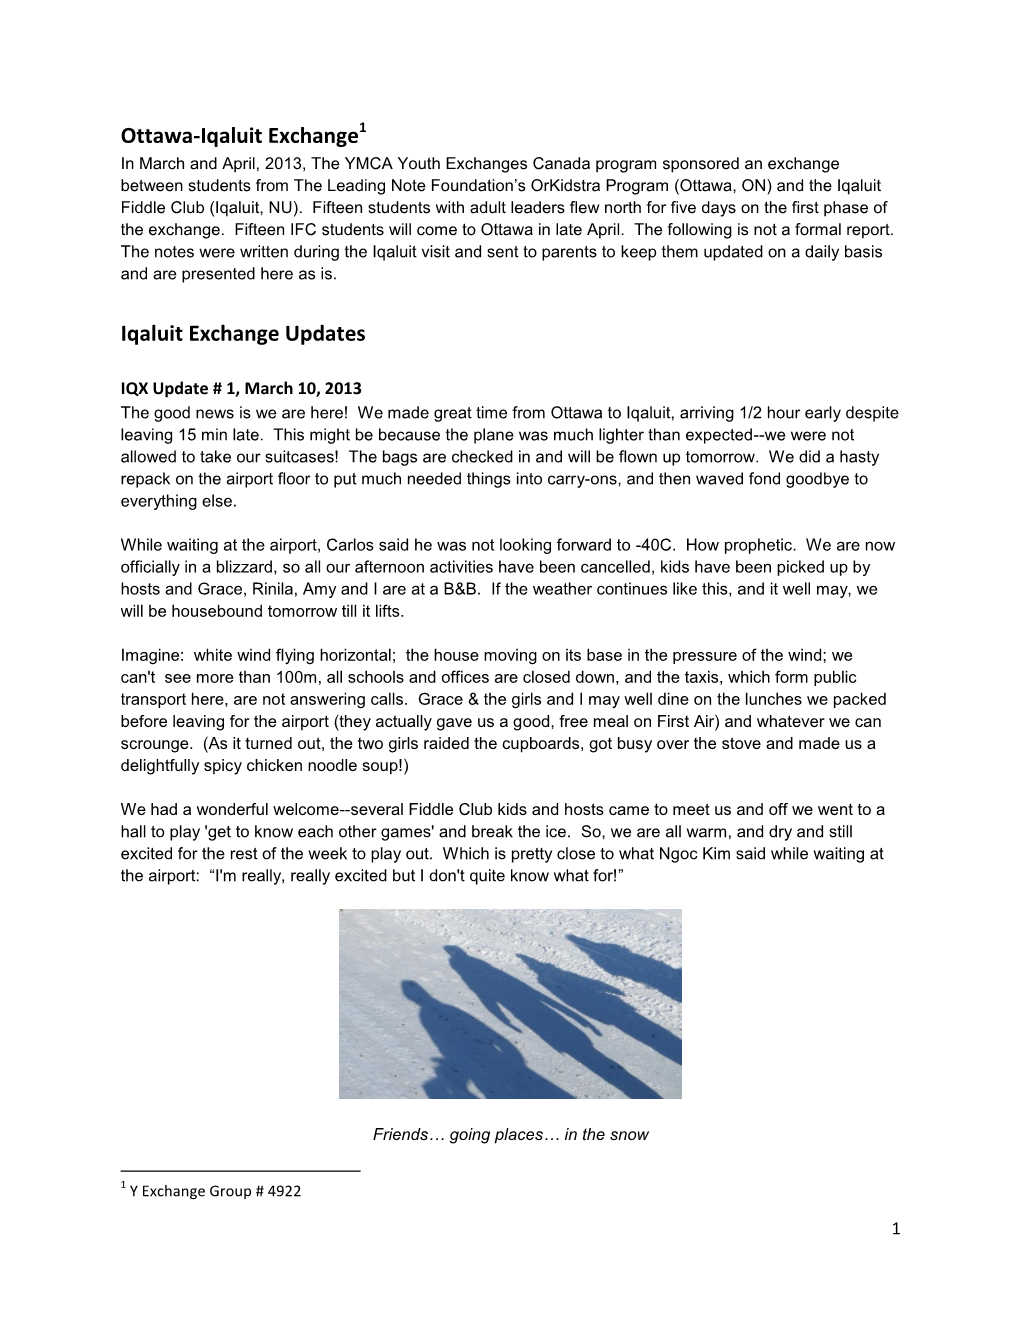 Ottawa-Iqaluit Exchange Iqaluit Exchange Updates